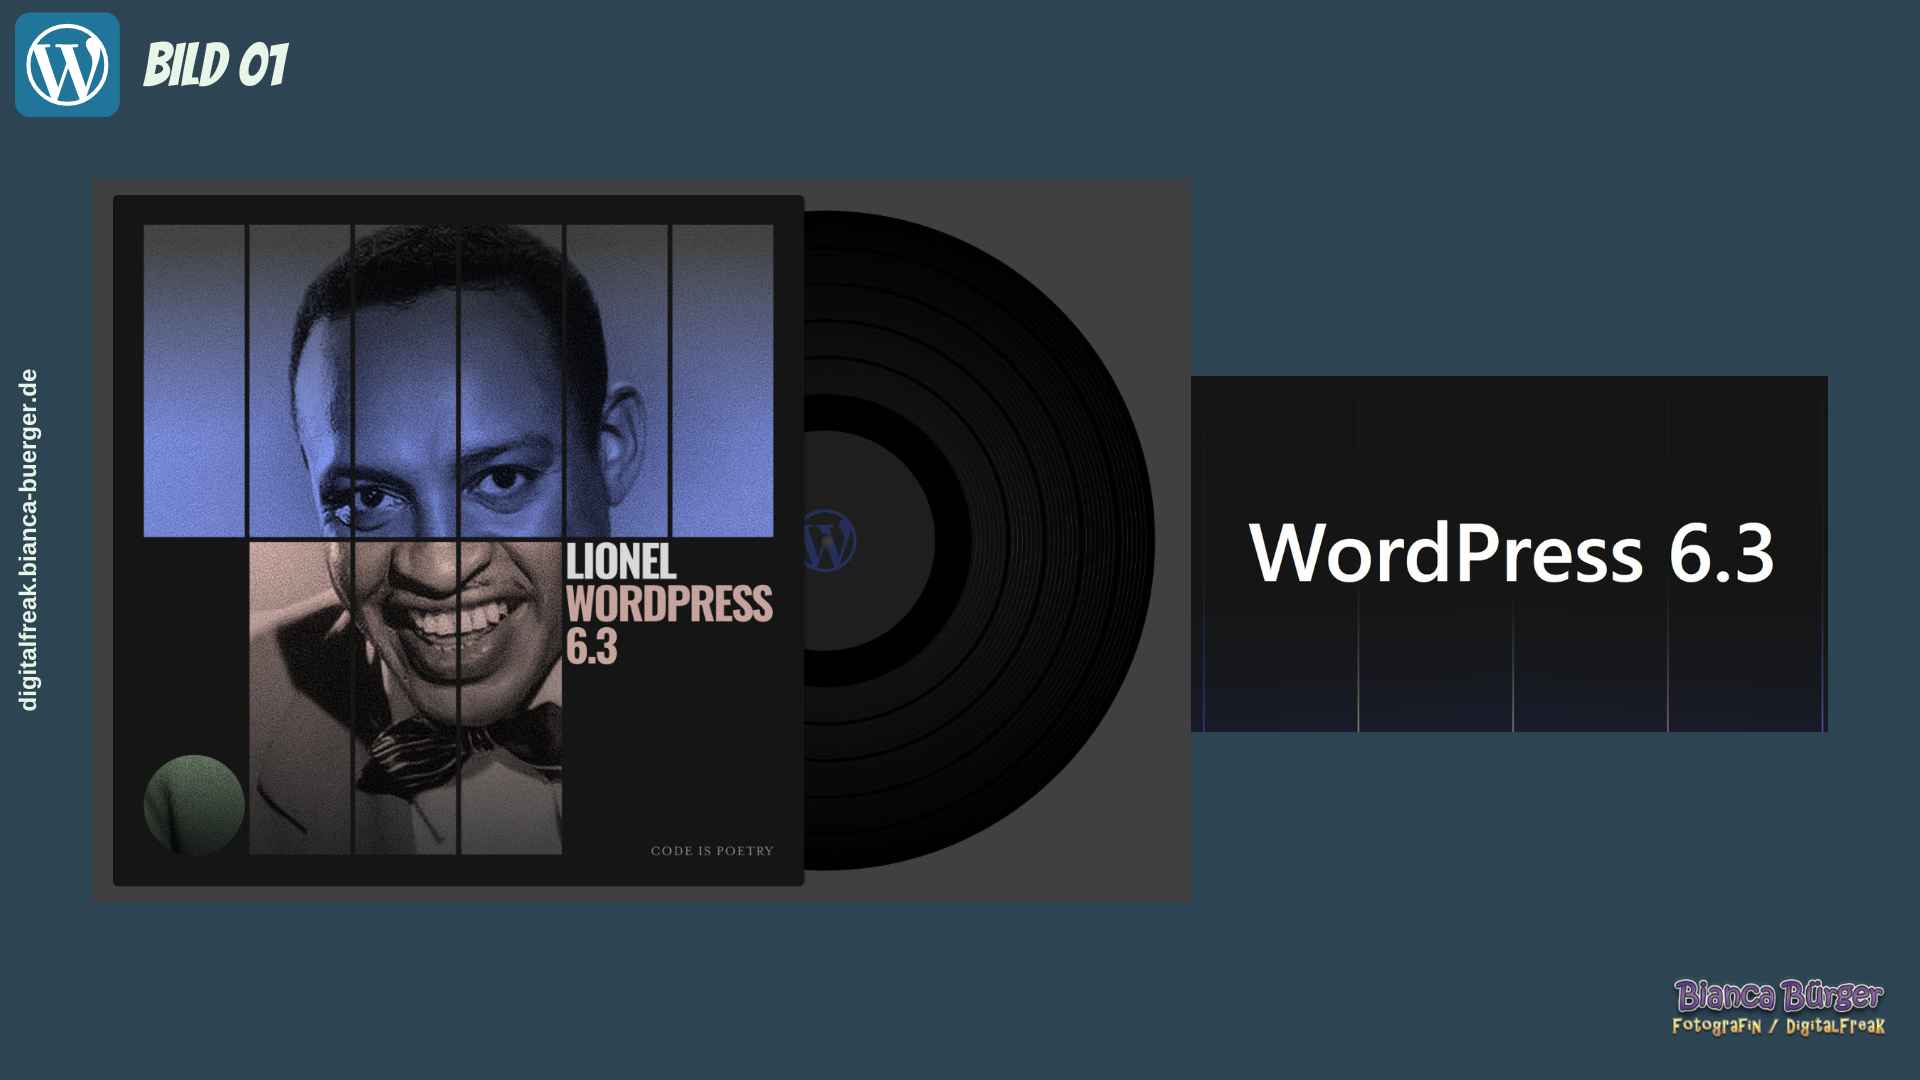 Das WordPress-Release 6.3 - Cover-Bild mit Musiker